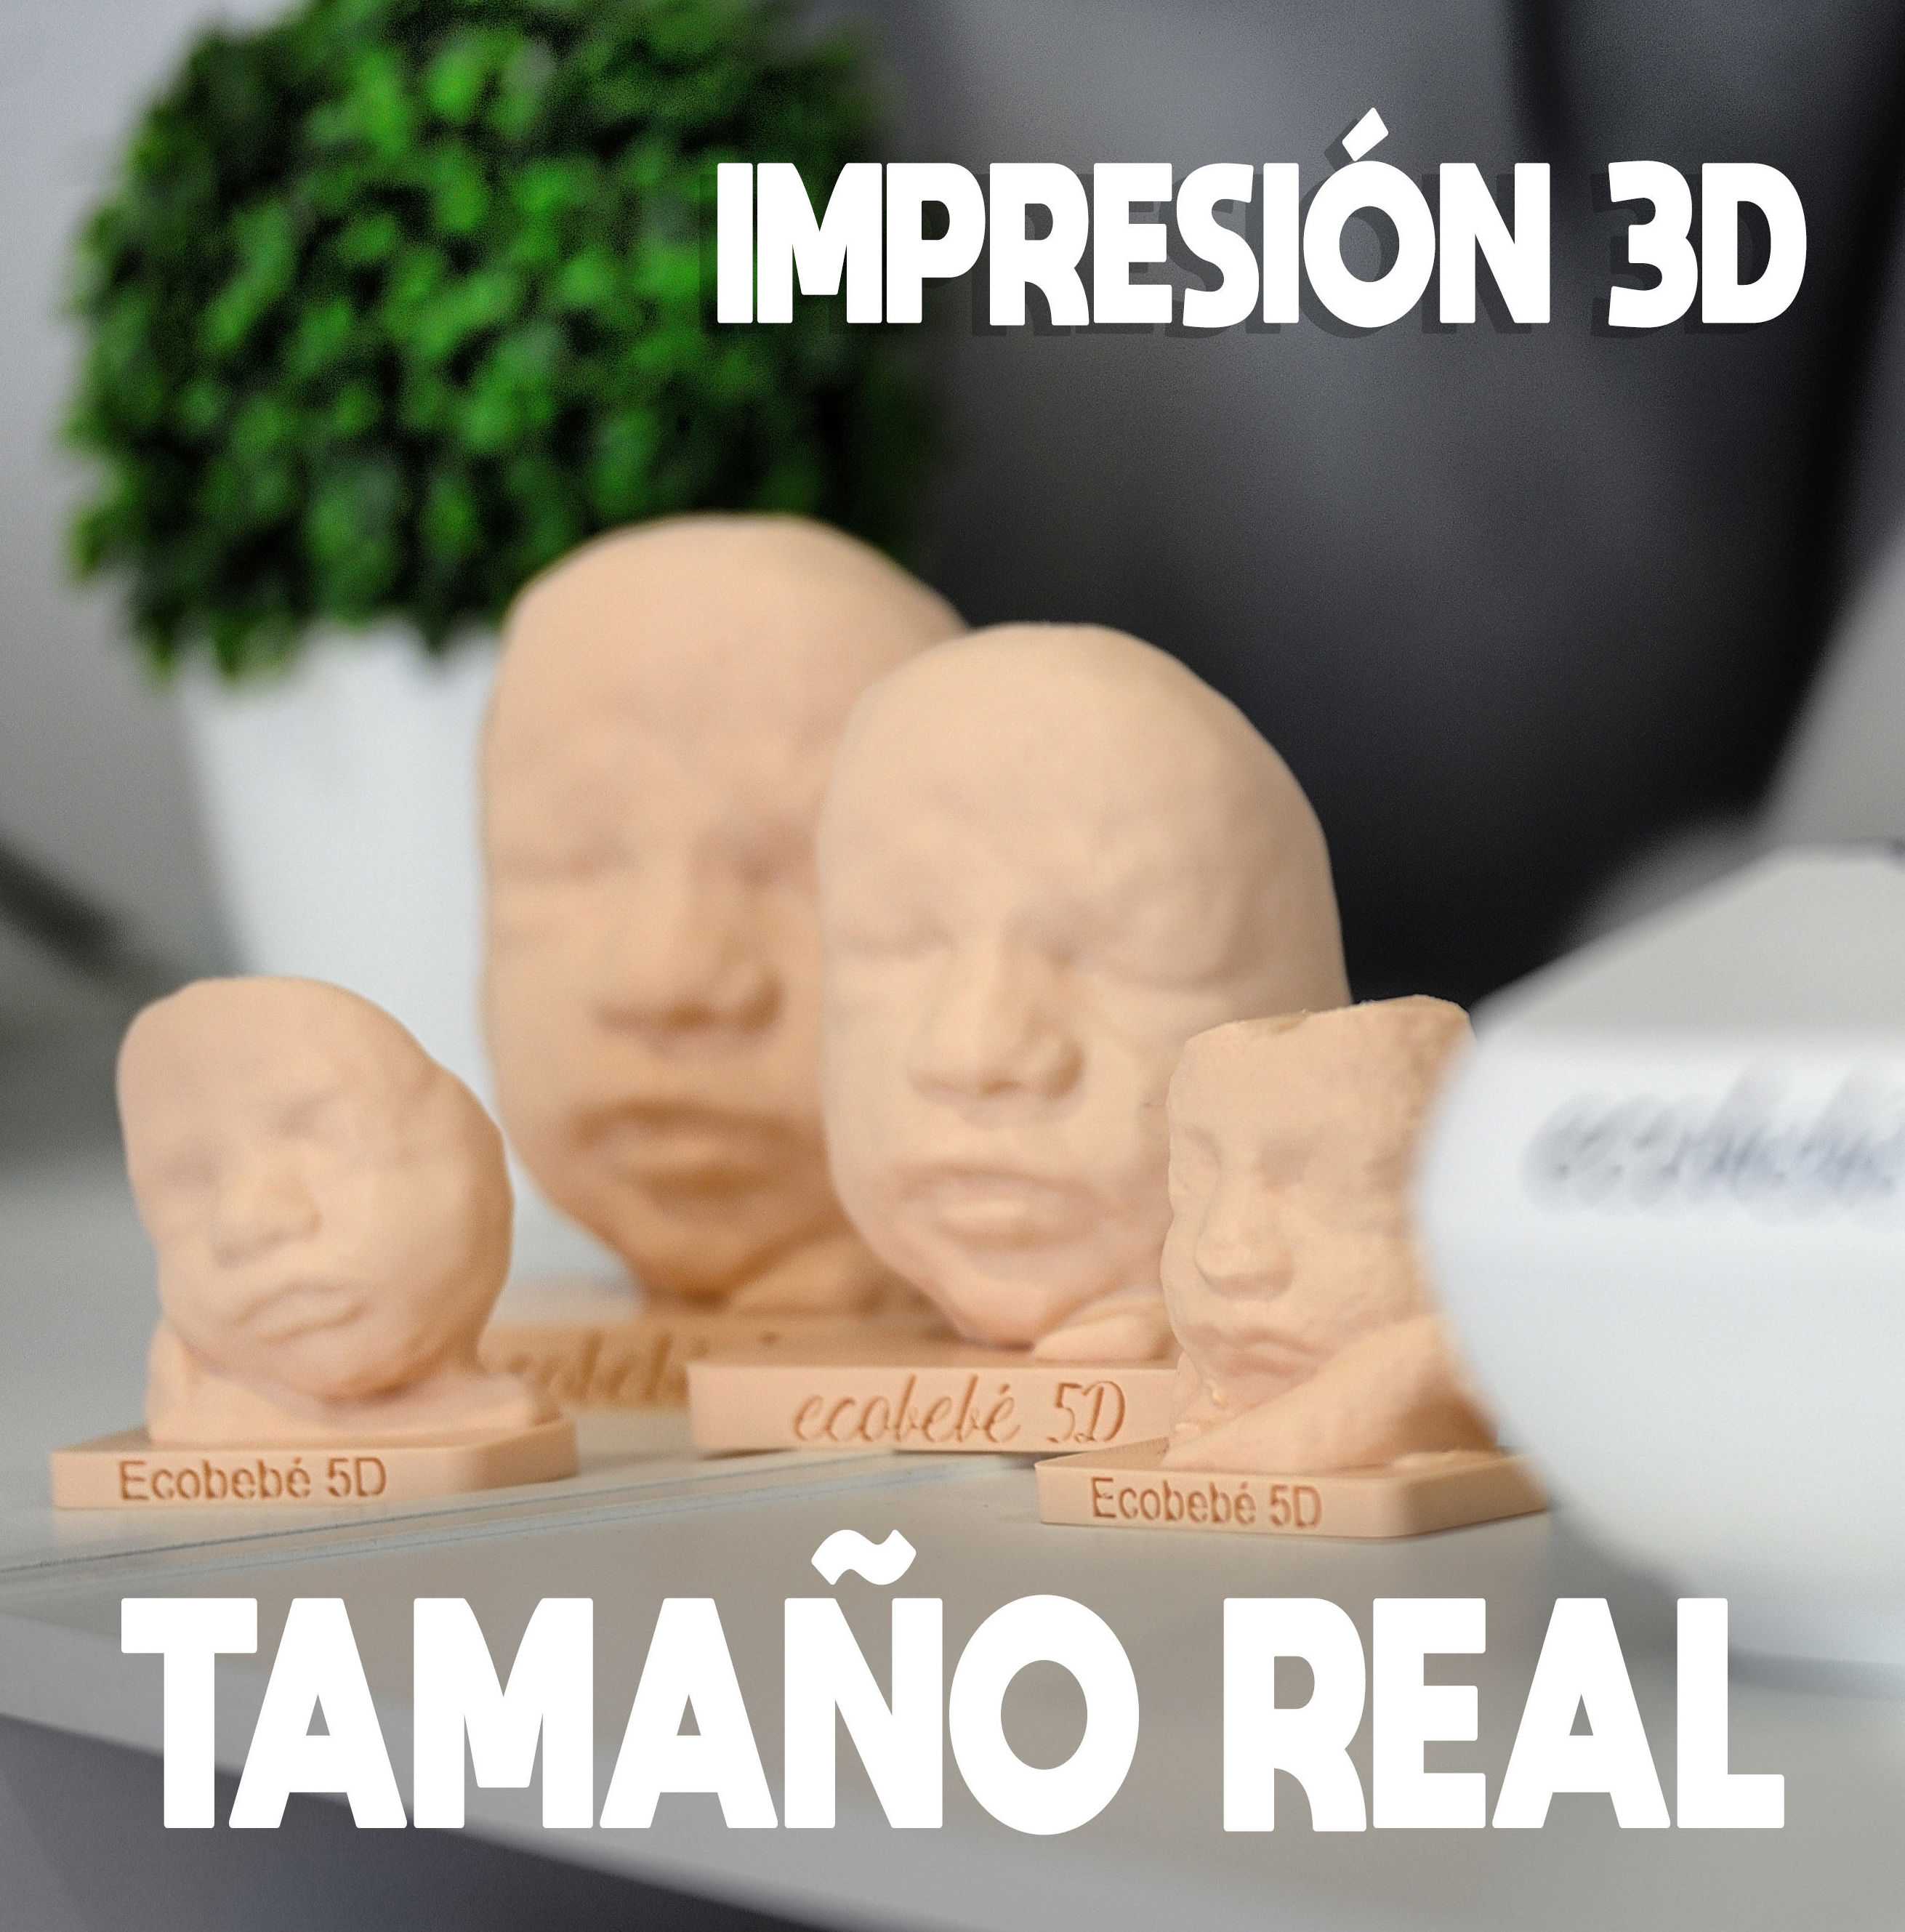 NOVEDAD IMPRESIÓN 3D A TAMAÑO REAL }}